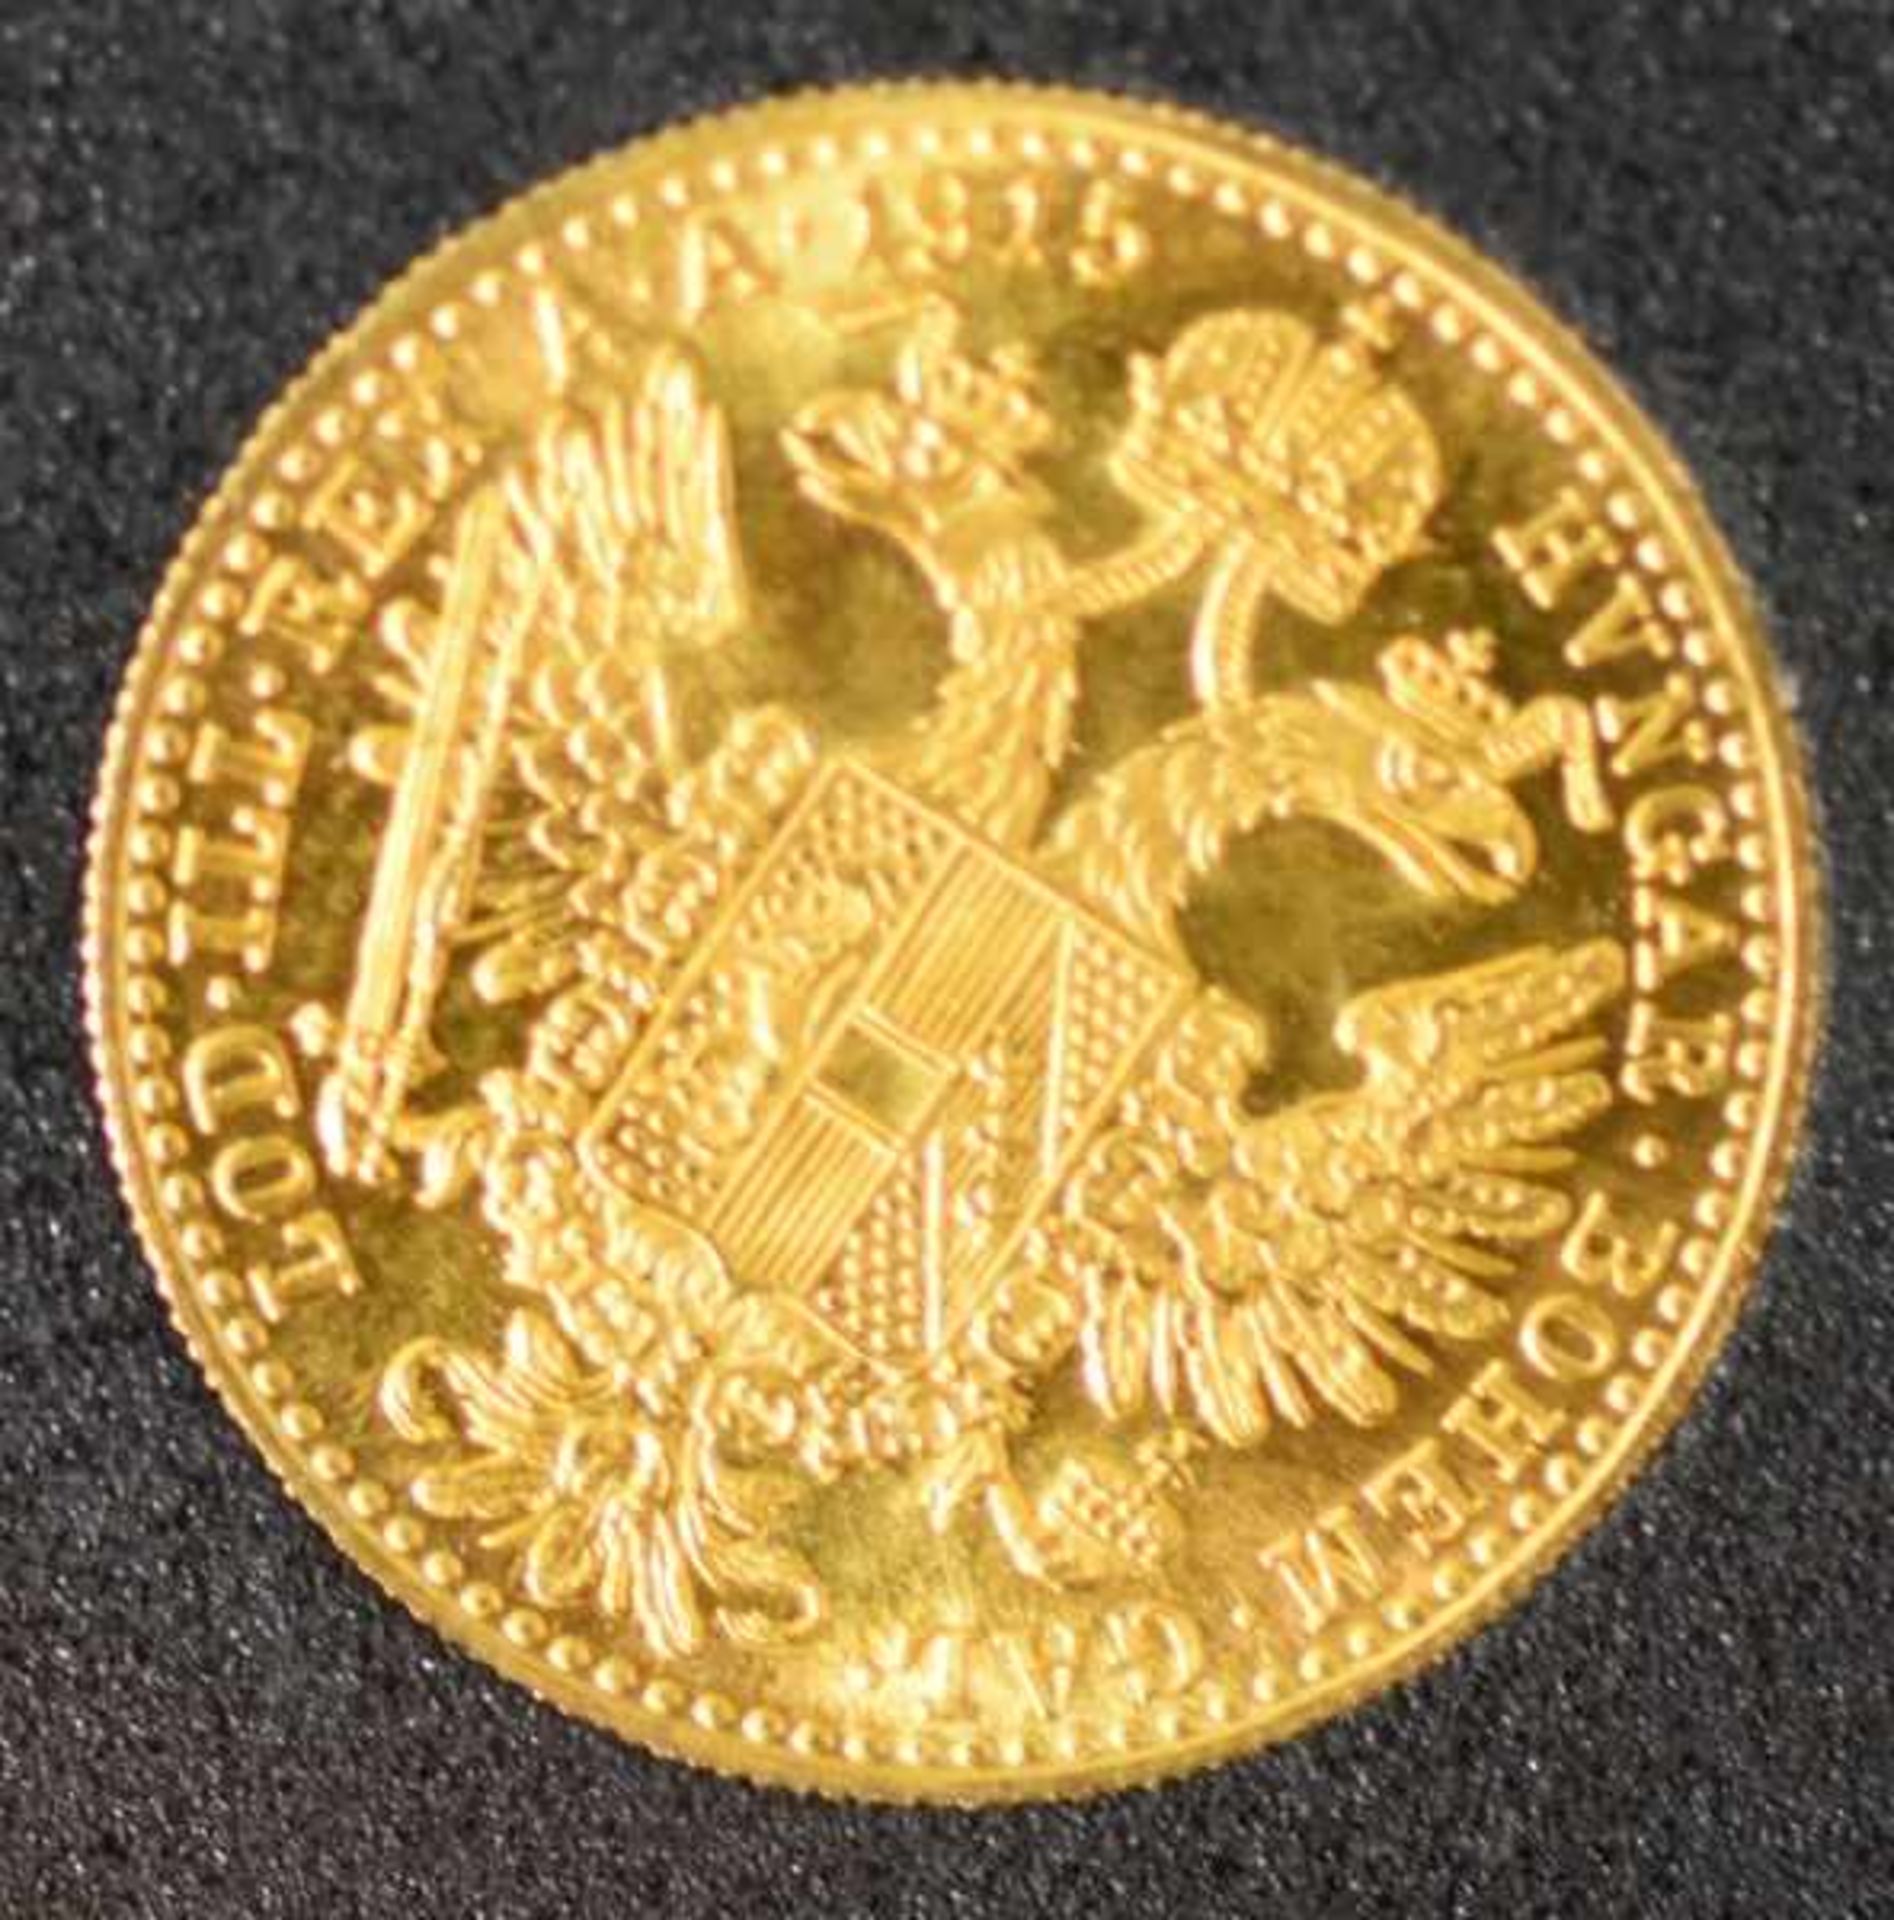 5 GOLDMÜNZEN Kaiserreich, Neuprägung, je 10 Goldmark (5 aus einem Set), Gold 900/1000, je 3,98gr, - Bild 4 aus 4